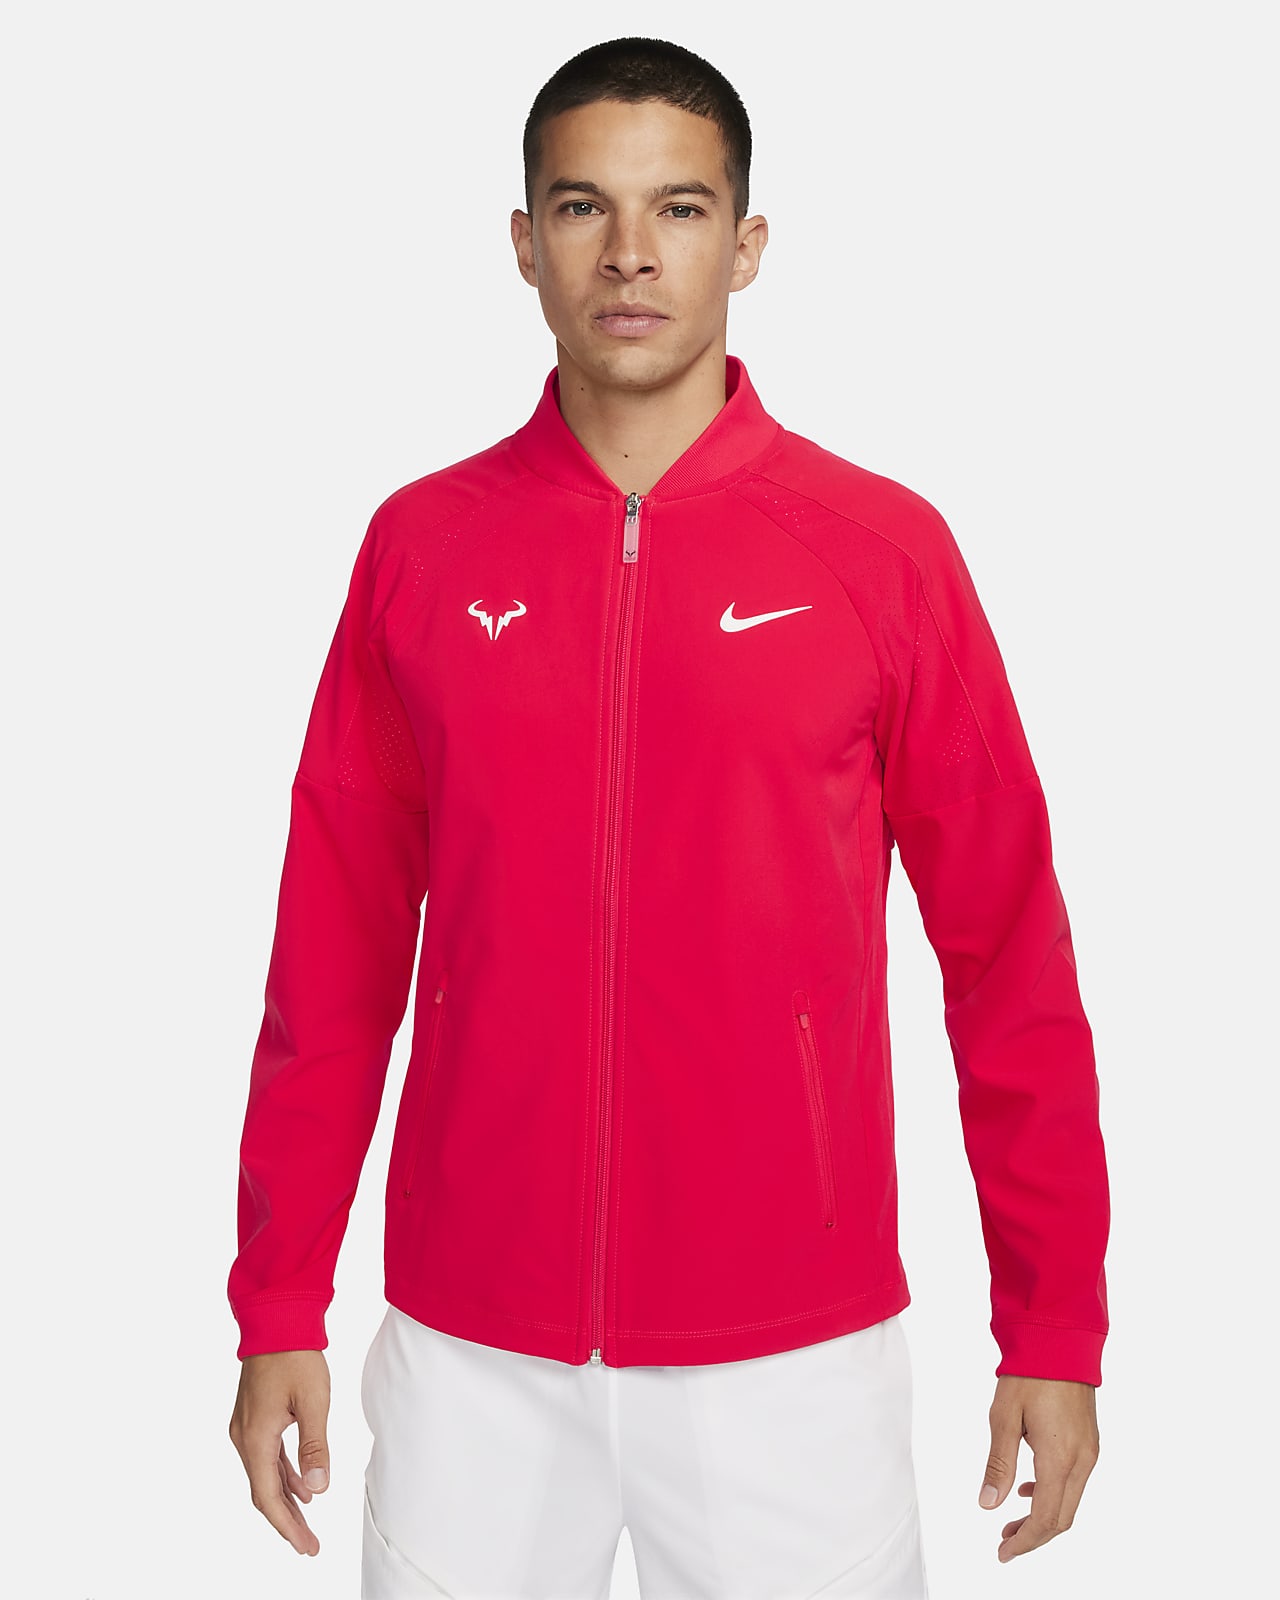 Tennisjacka Nike Dri-FIT Rafa för män